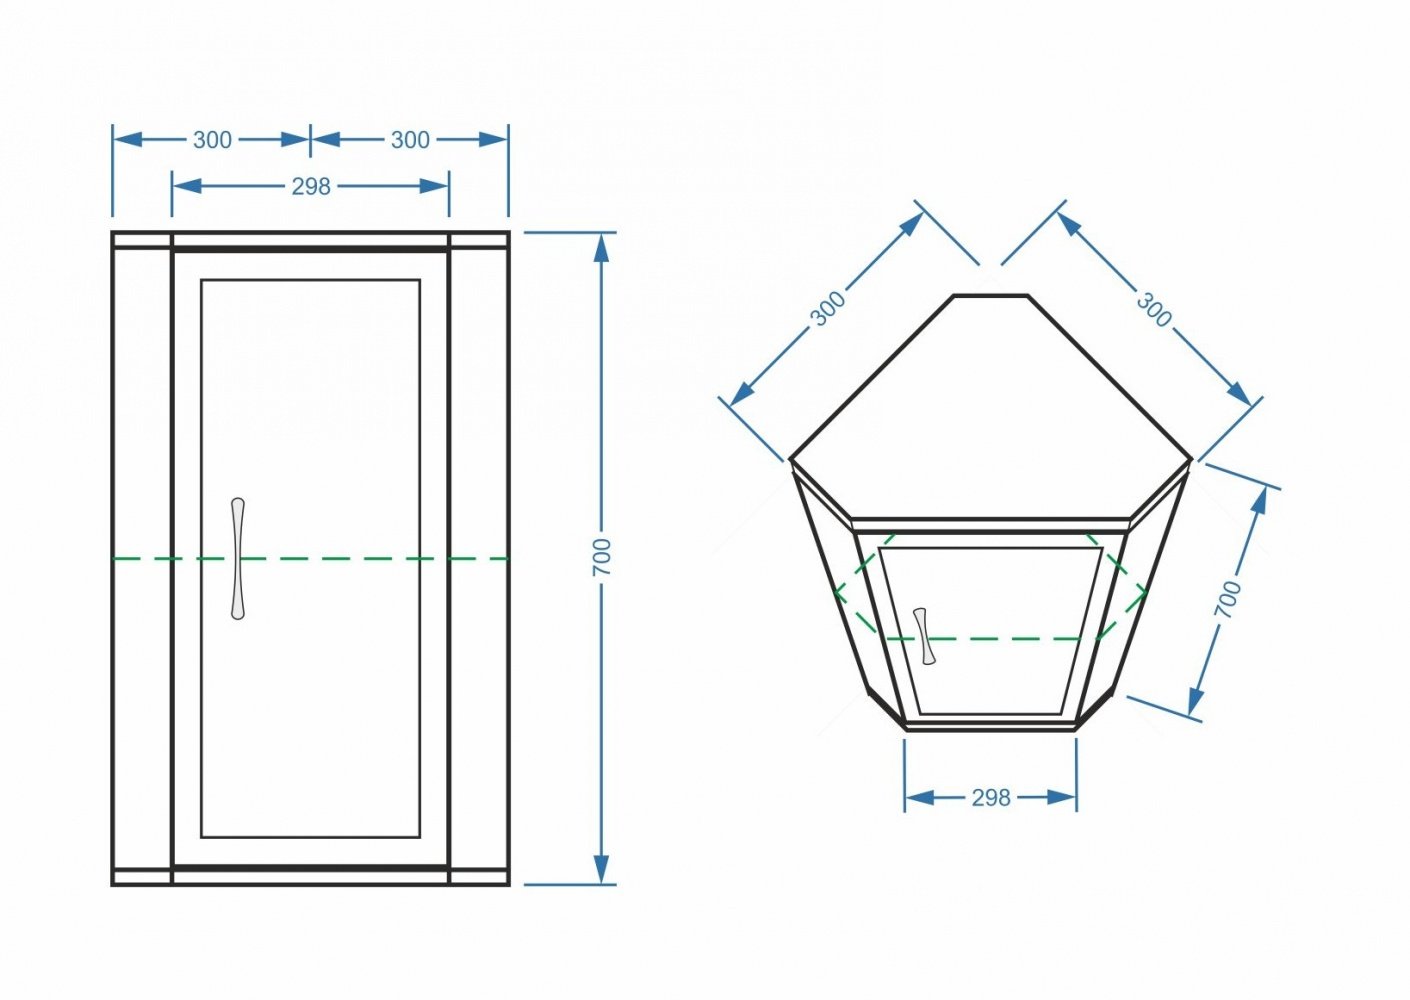 Шкаф подвесной угловой Stella Polar Концепт 60/80 SP-00000142 60 см, универсальный, белый